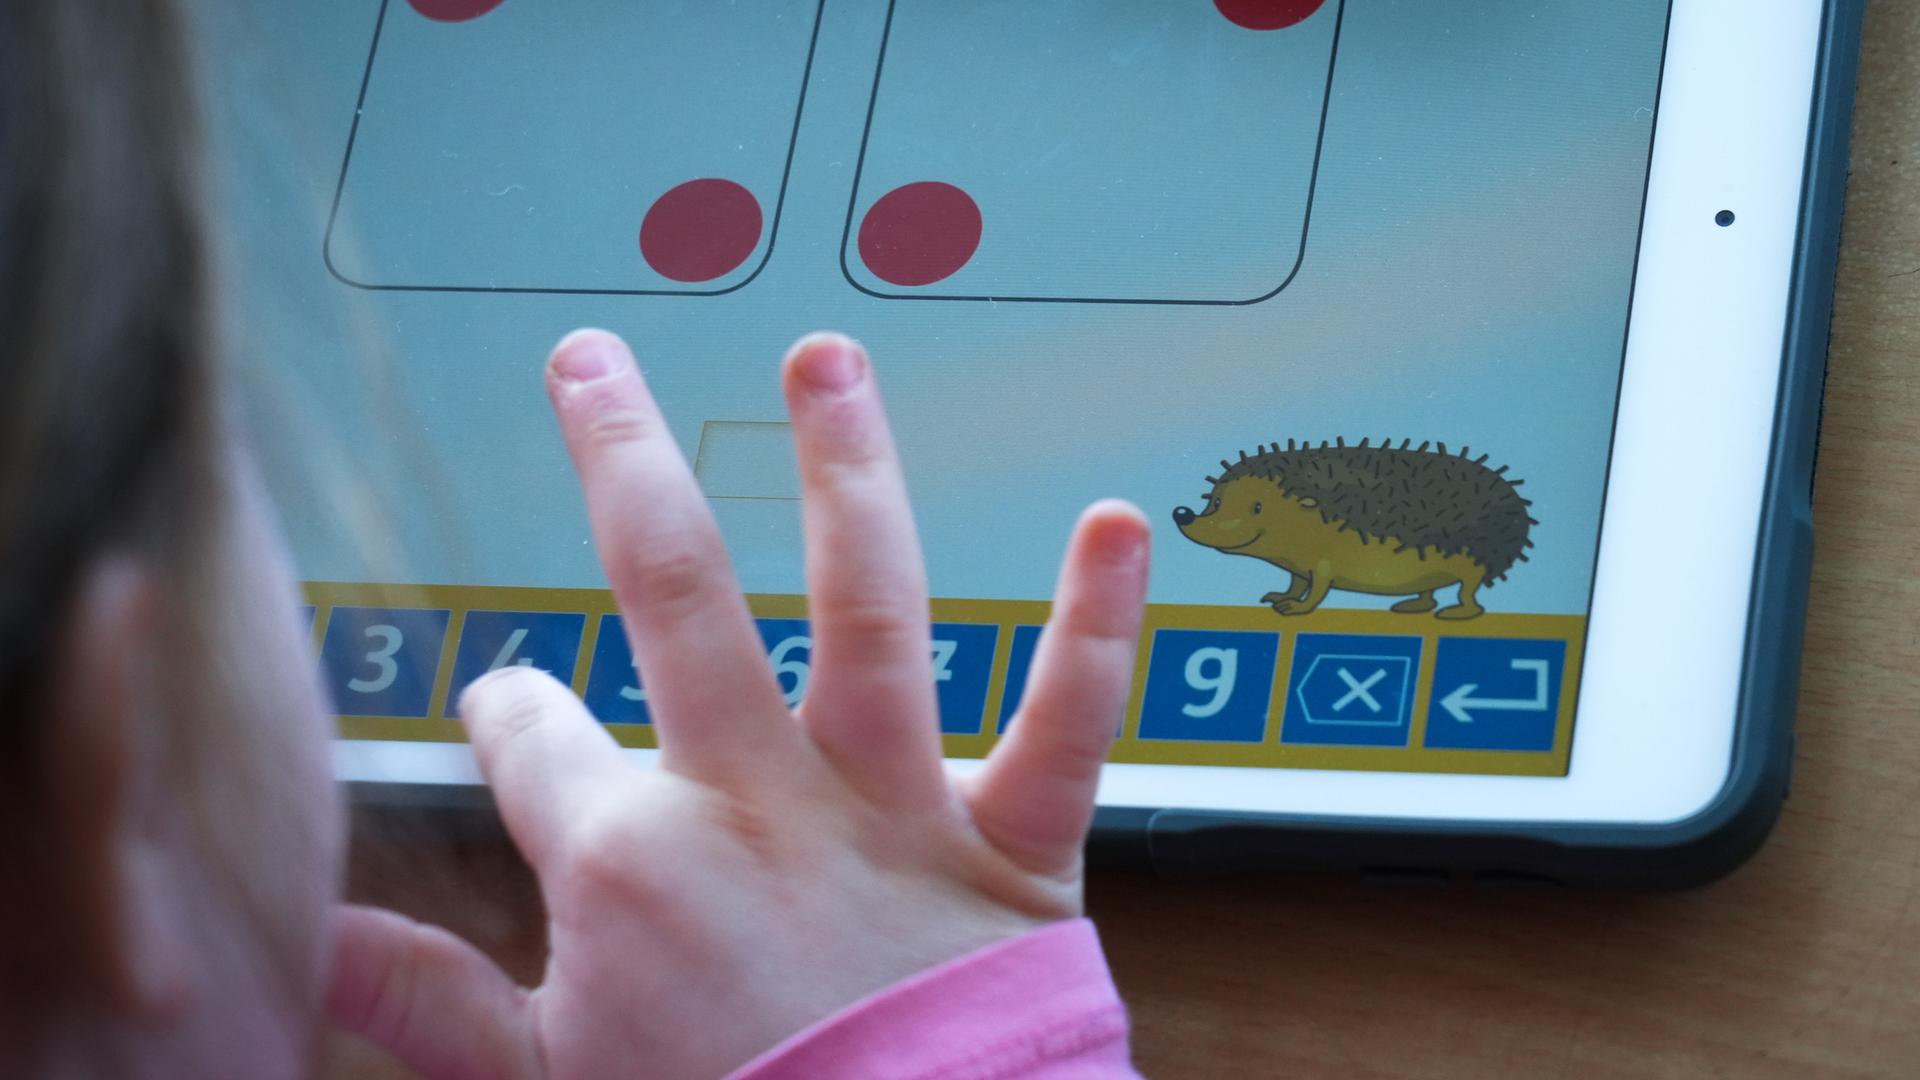 Kinderfinger tippen auf einem Tablet auf dem spielerisch eine Rechenaufgabe dargestellt ist.